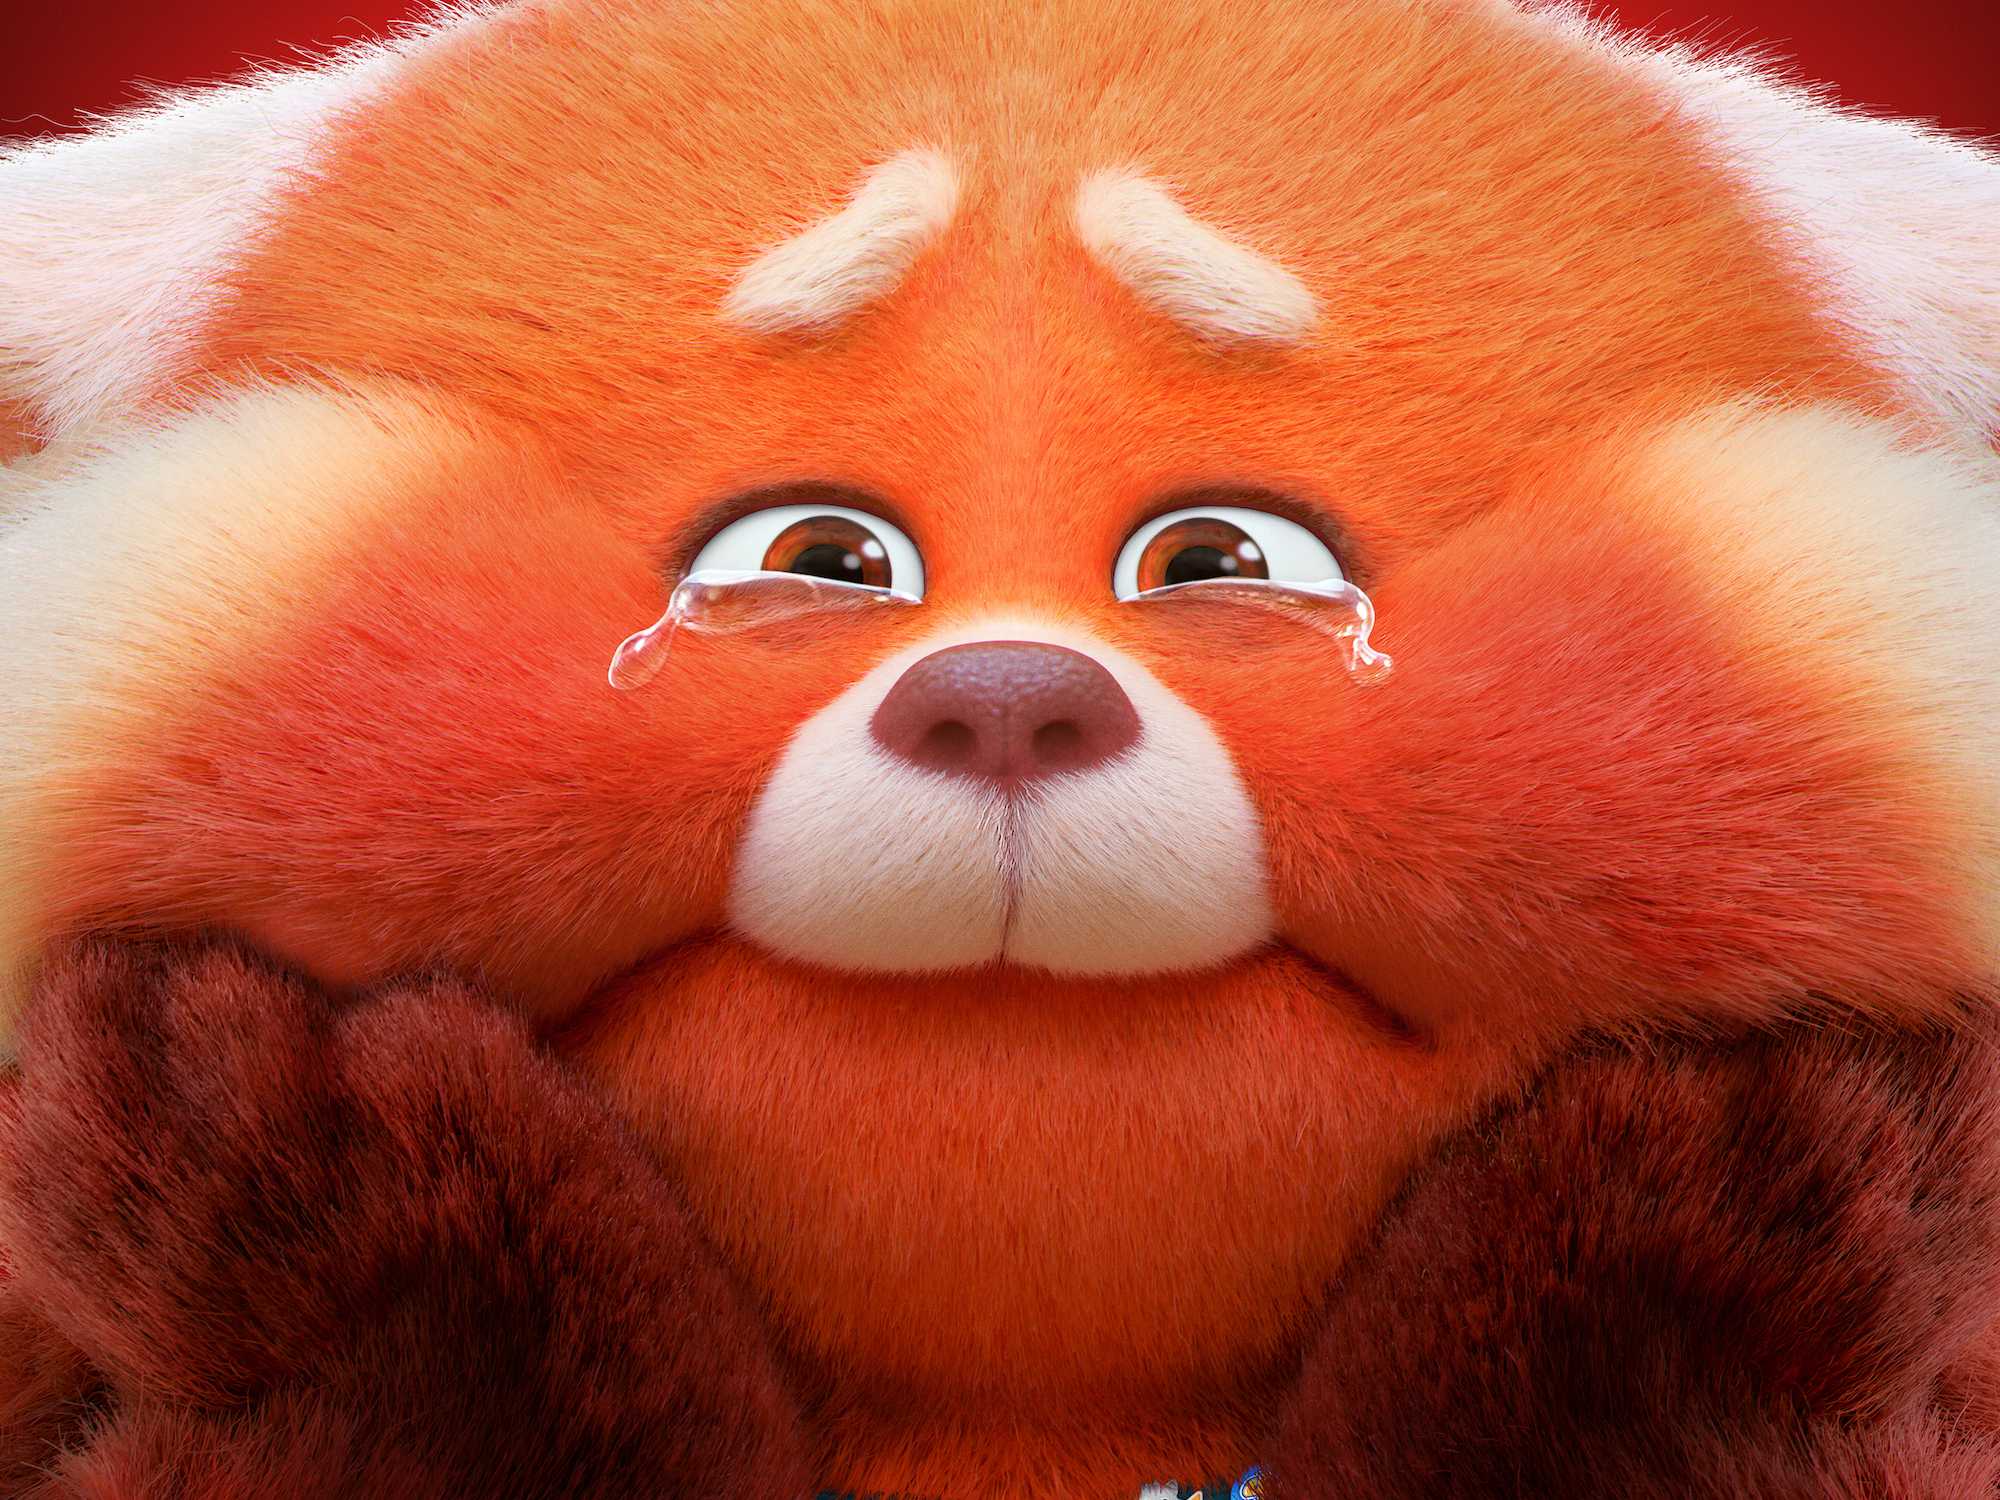 Pixars Turning Red HD Wallpaper 